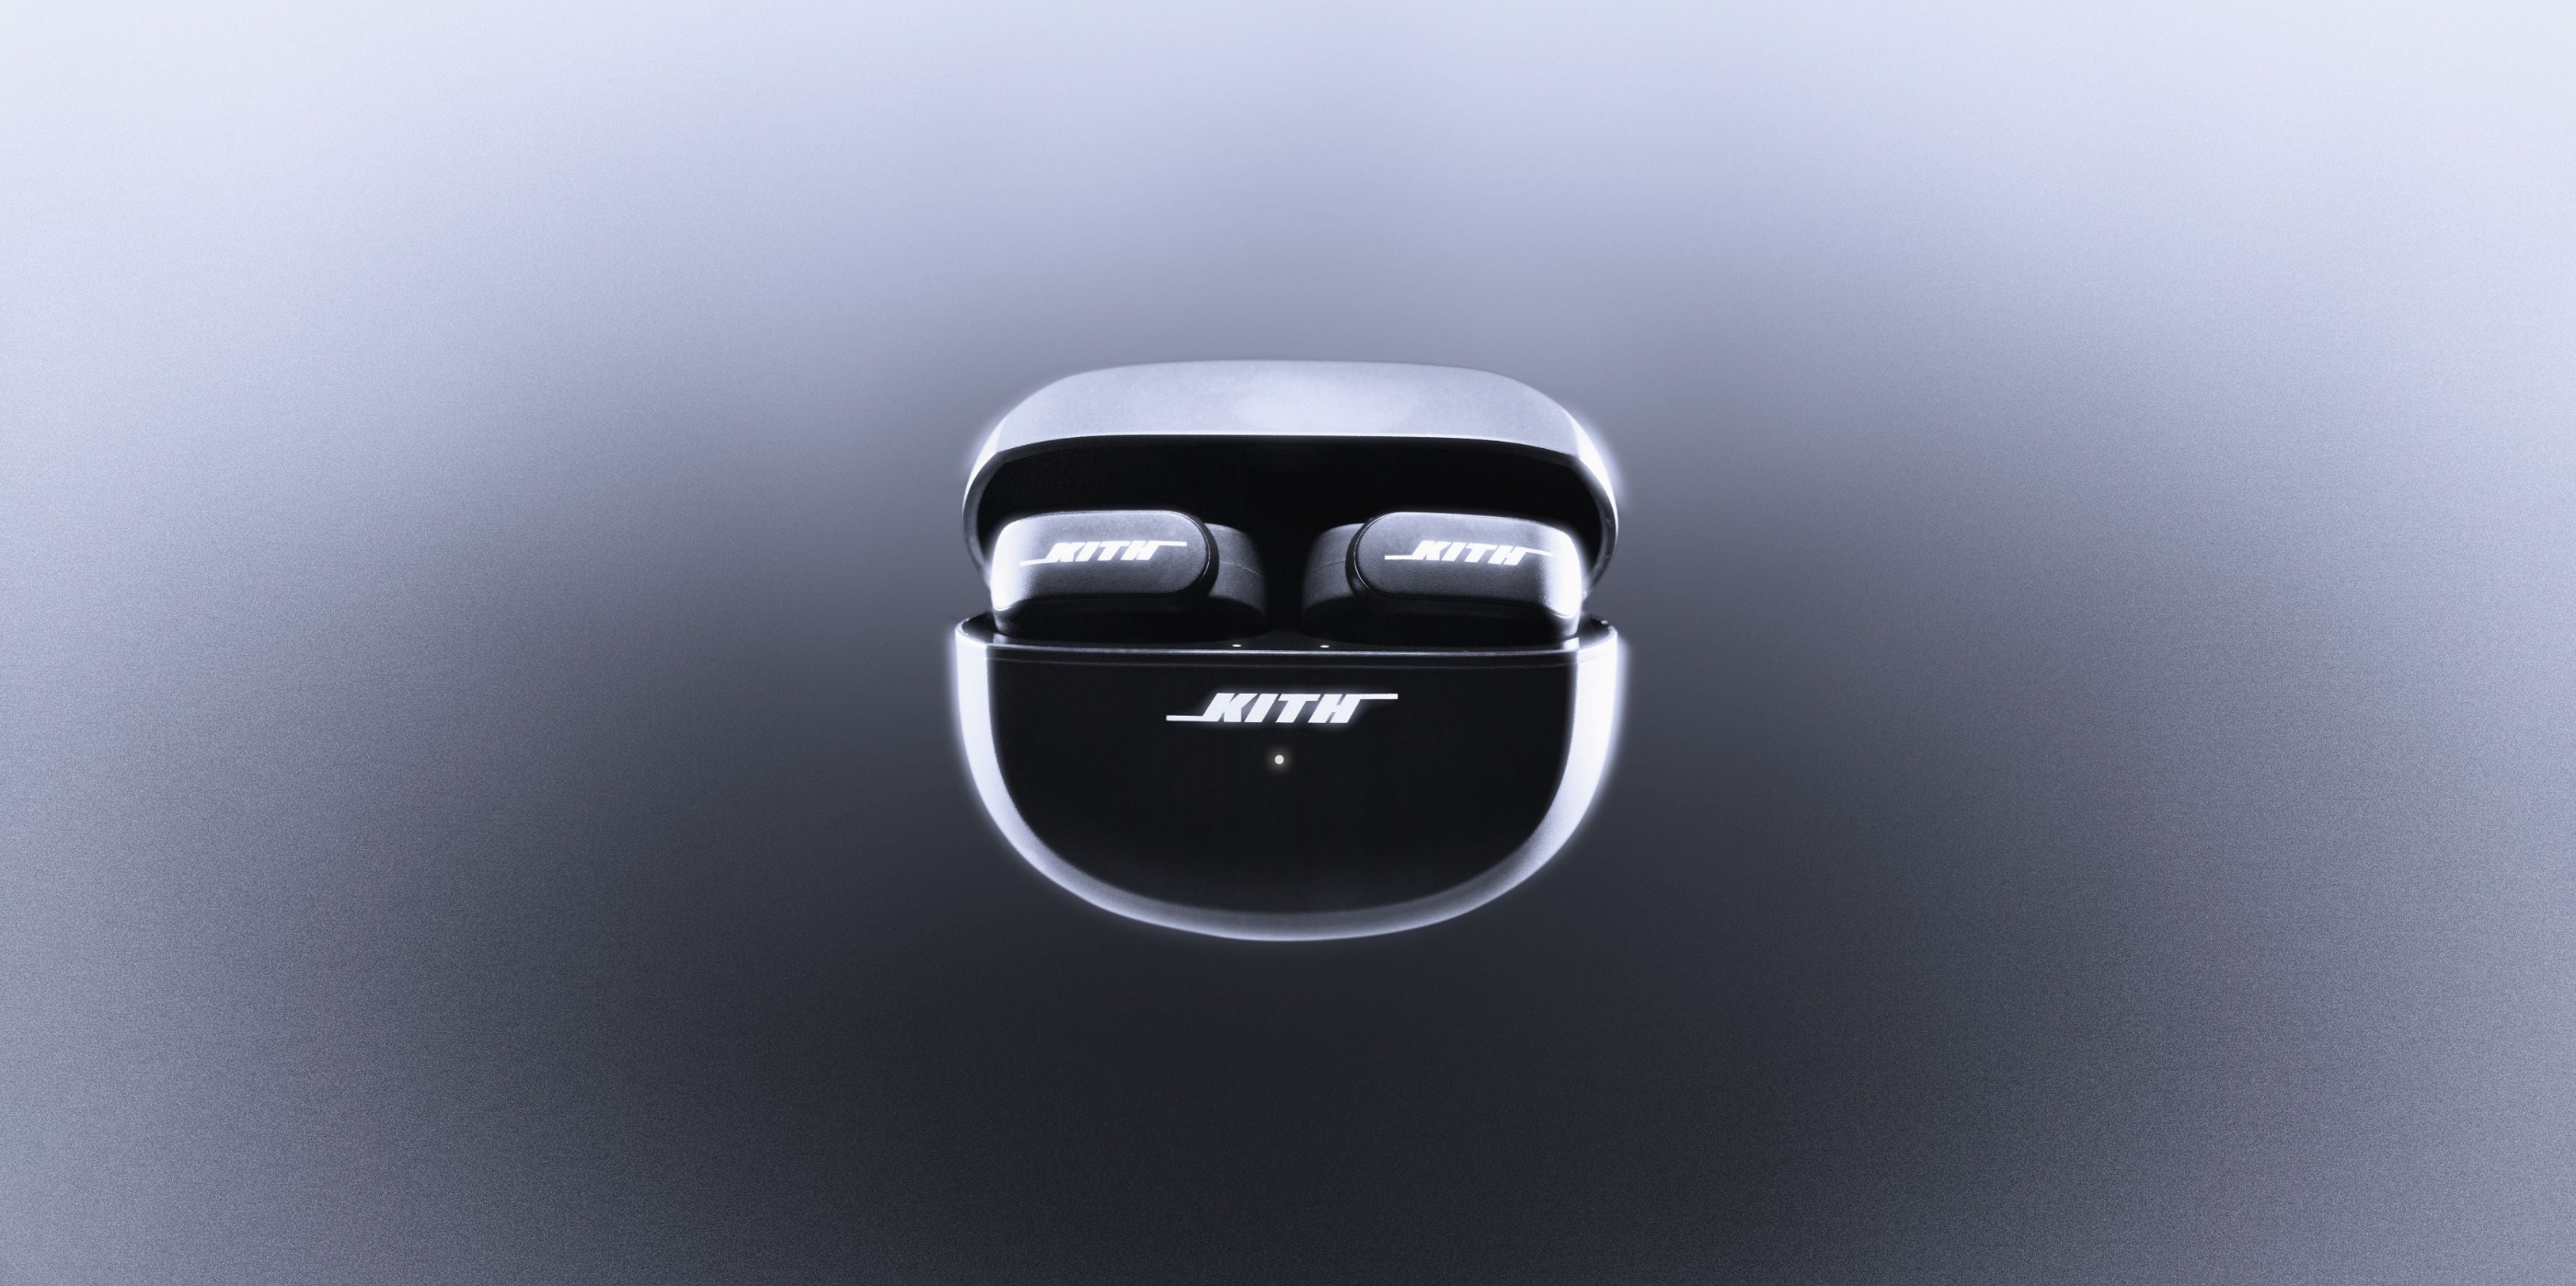 Bose e Kith hanno presentato gli auricolari Ultra Open dal design insolito e dal prezzo di 300 dollari.